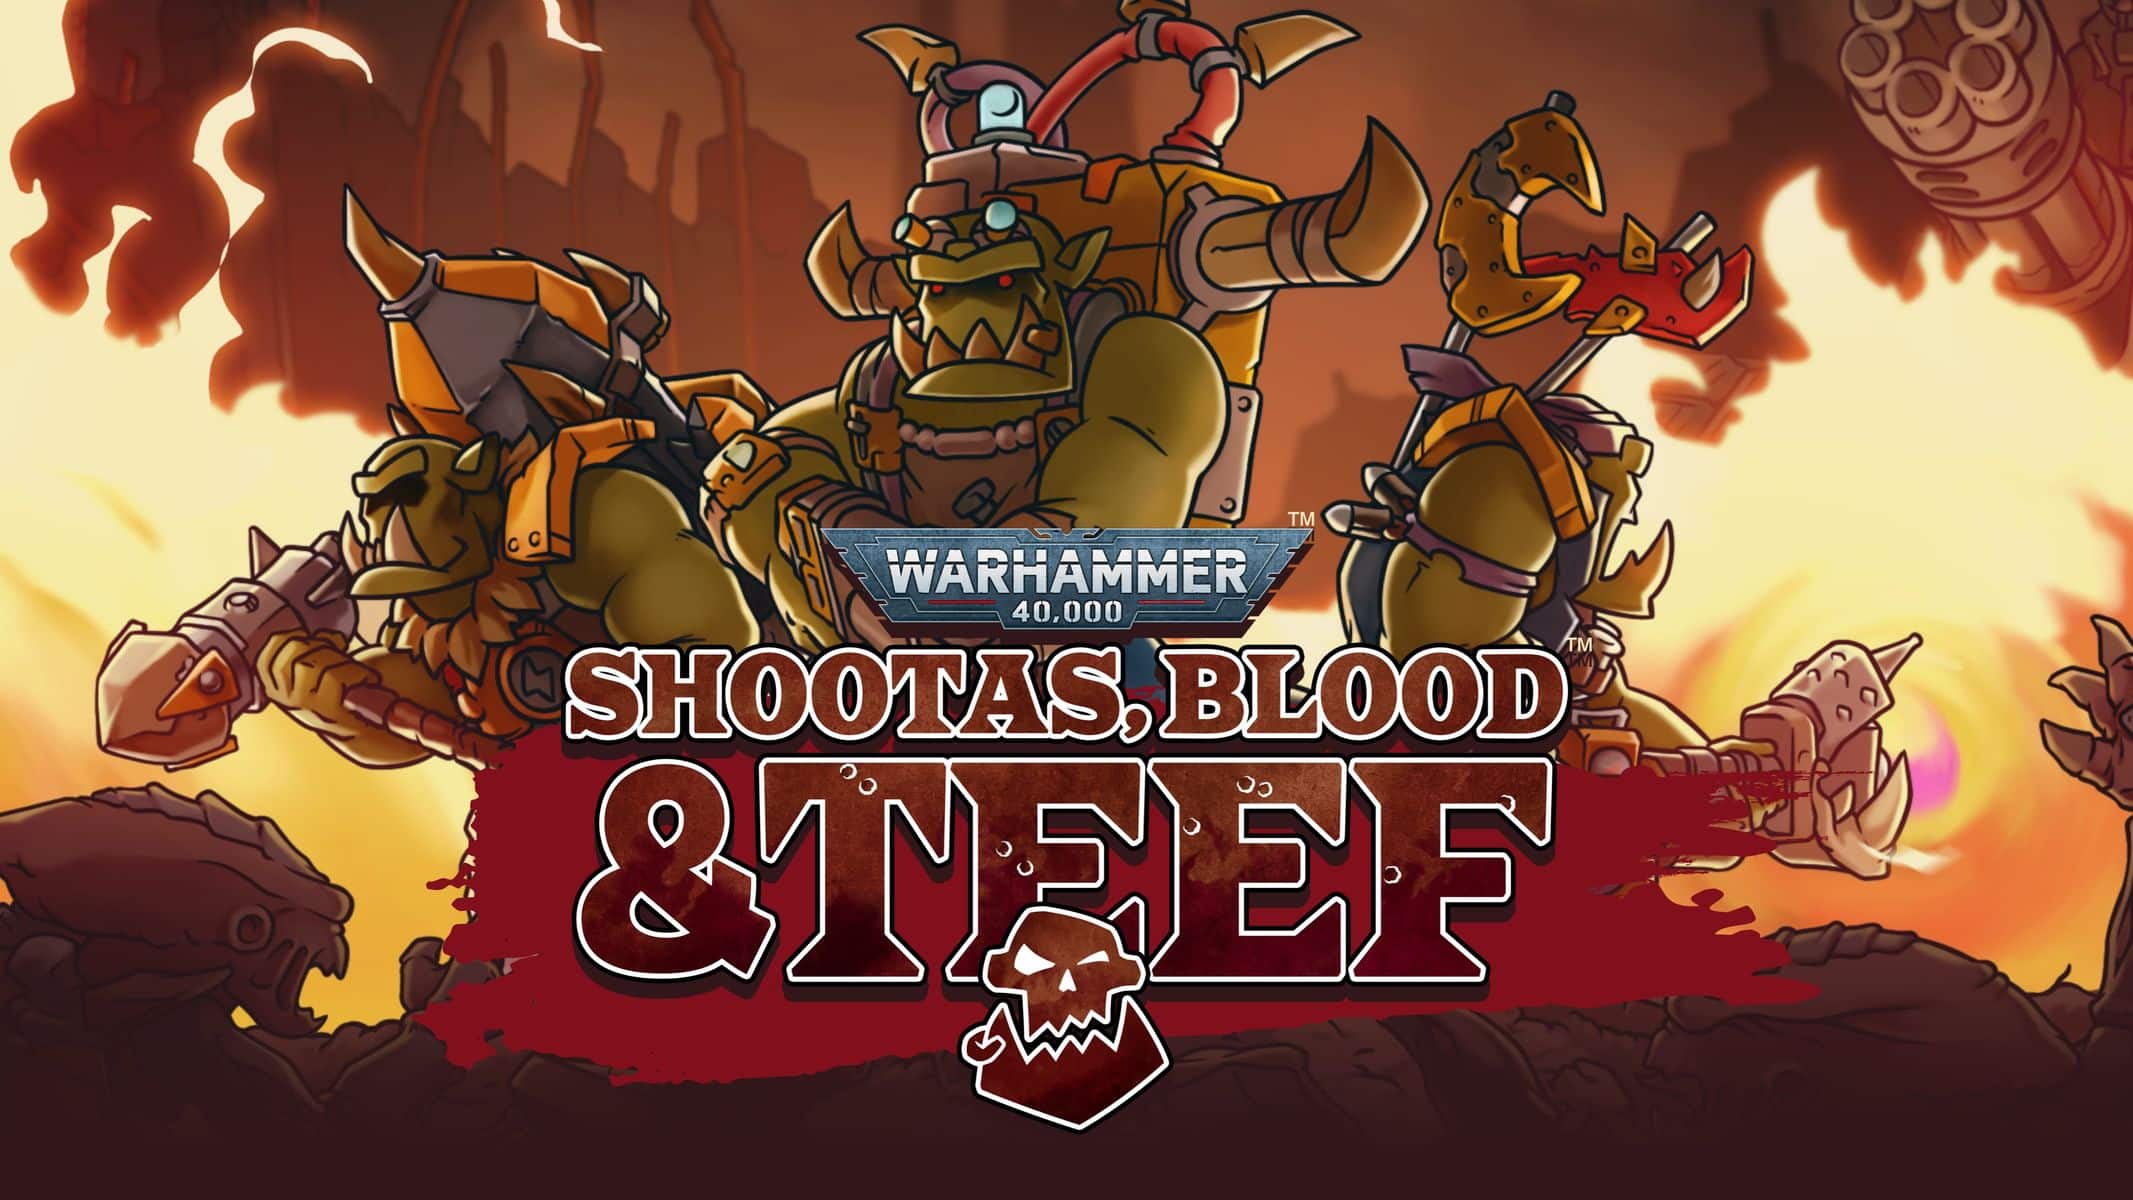 Warhammer Skulls 2023 Event Shootas, Blood & Teefs update